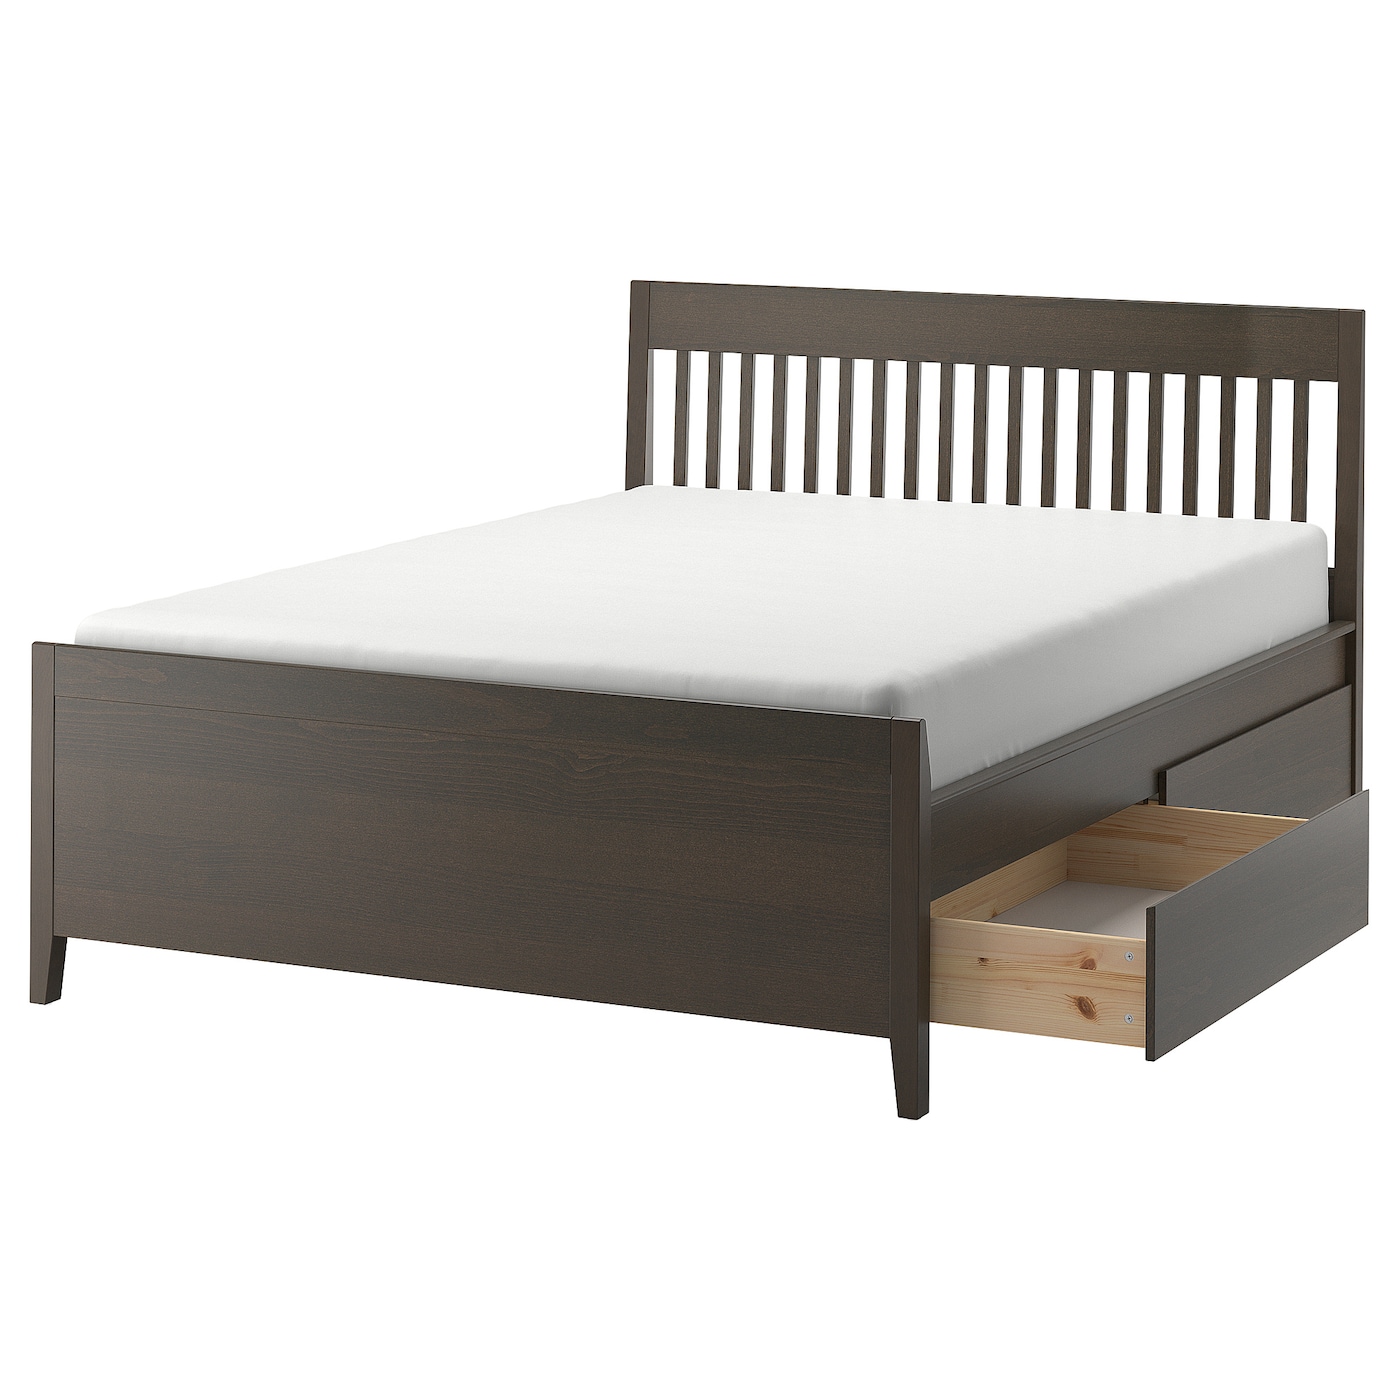 Каркас кровати с ящиками - IKEA IDANÄS/IDANAS, 200х140 см, темно-коричневый, ИДАНЭС ИКЕА